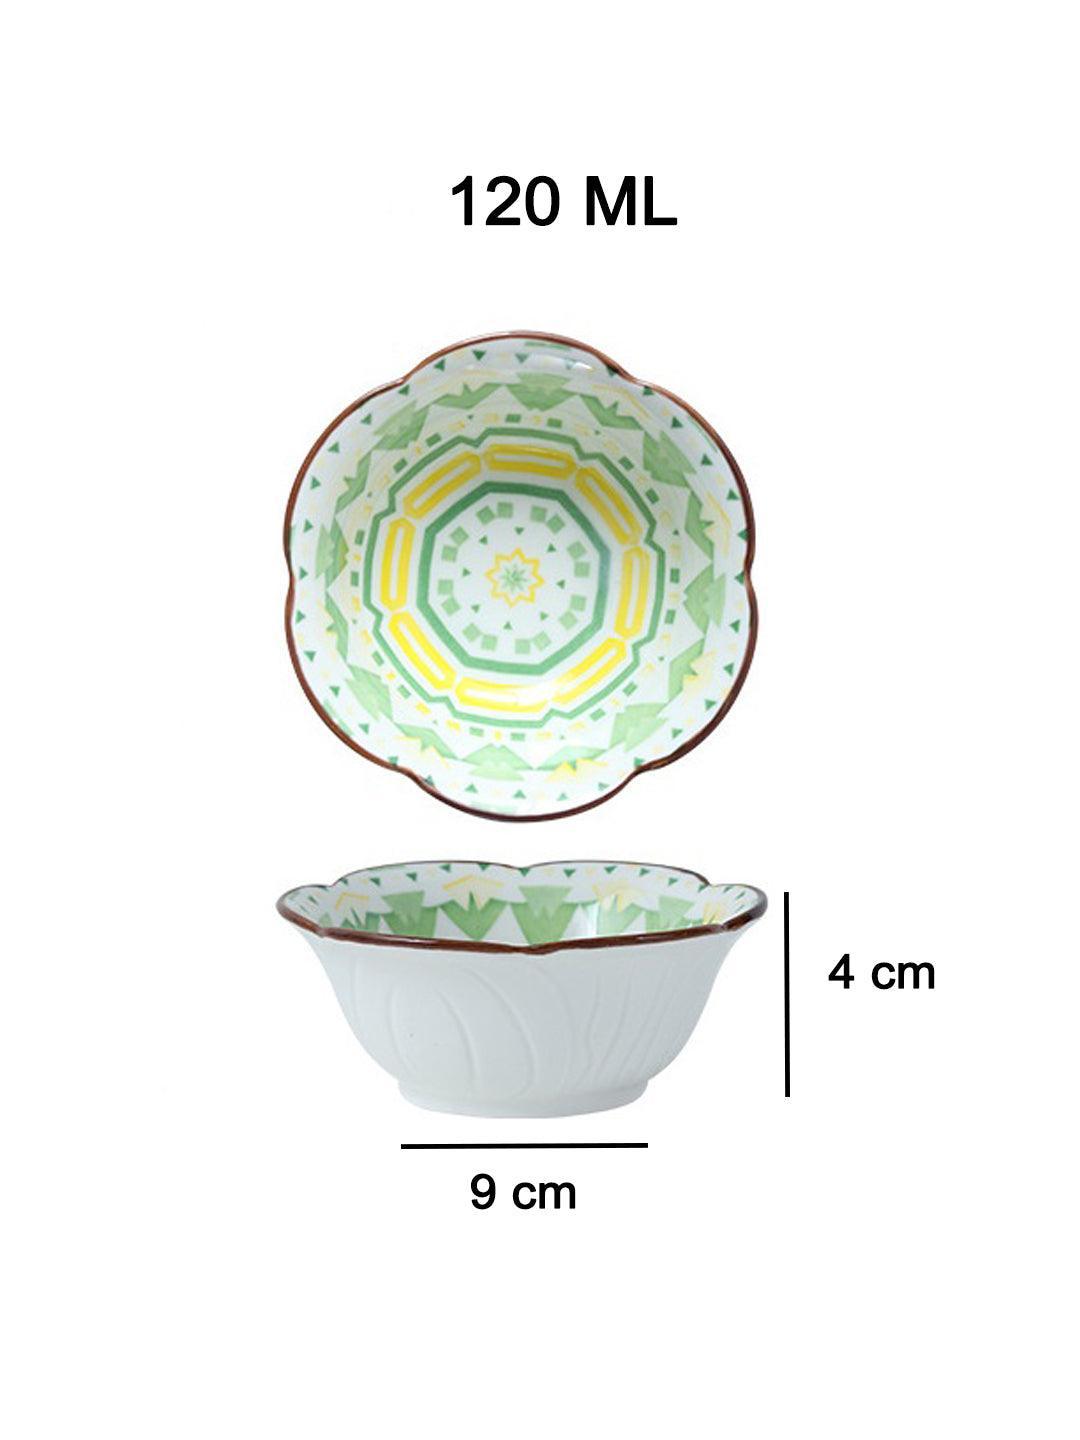 Maket99 120 Ml Ceramic Serving Bowls - Set Of 2 - MARKET 99